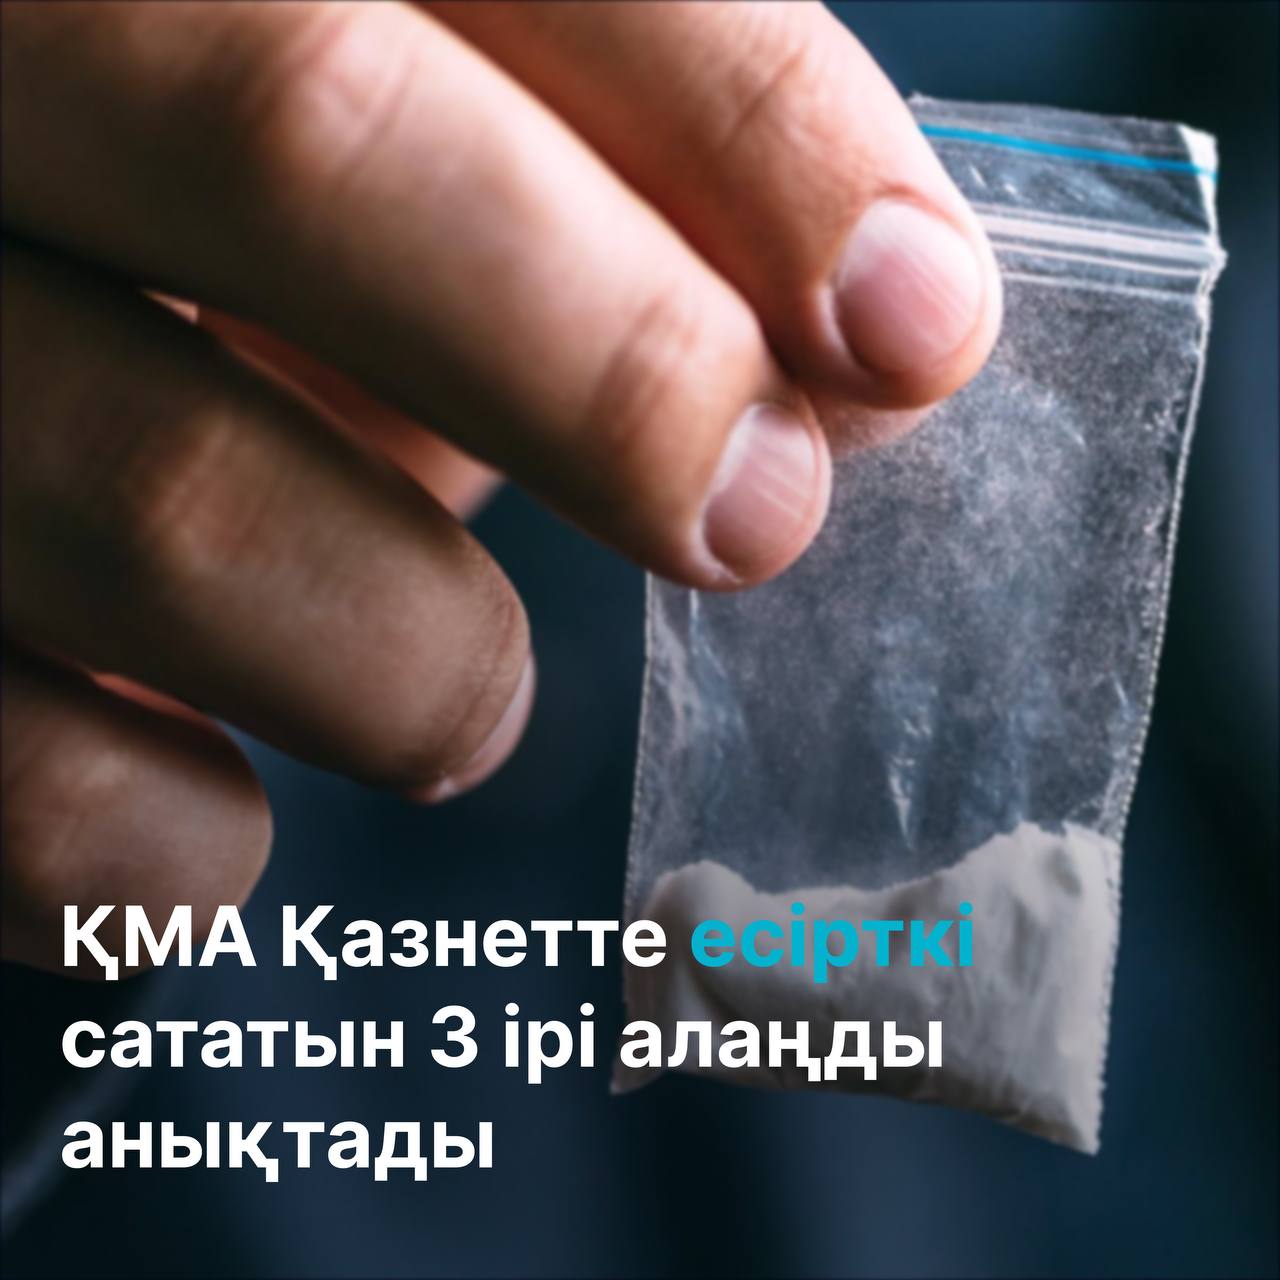 АФМ: более 50% продажи наркотиков приходится на три региона страны